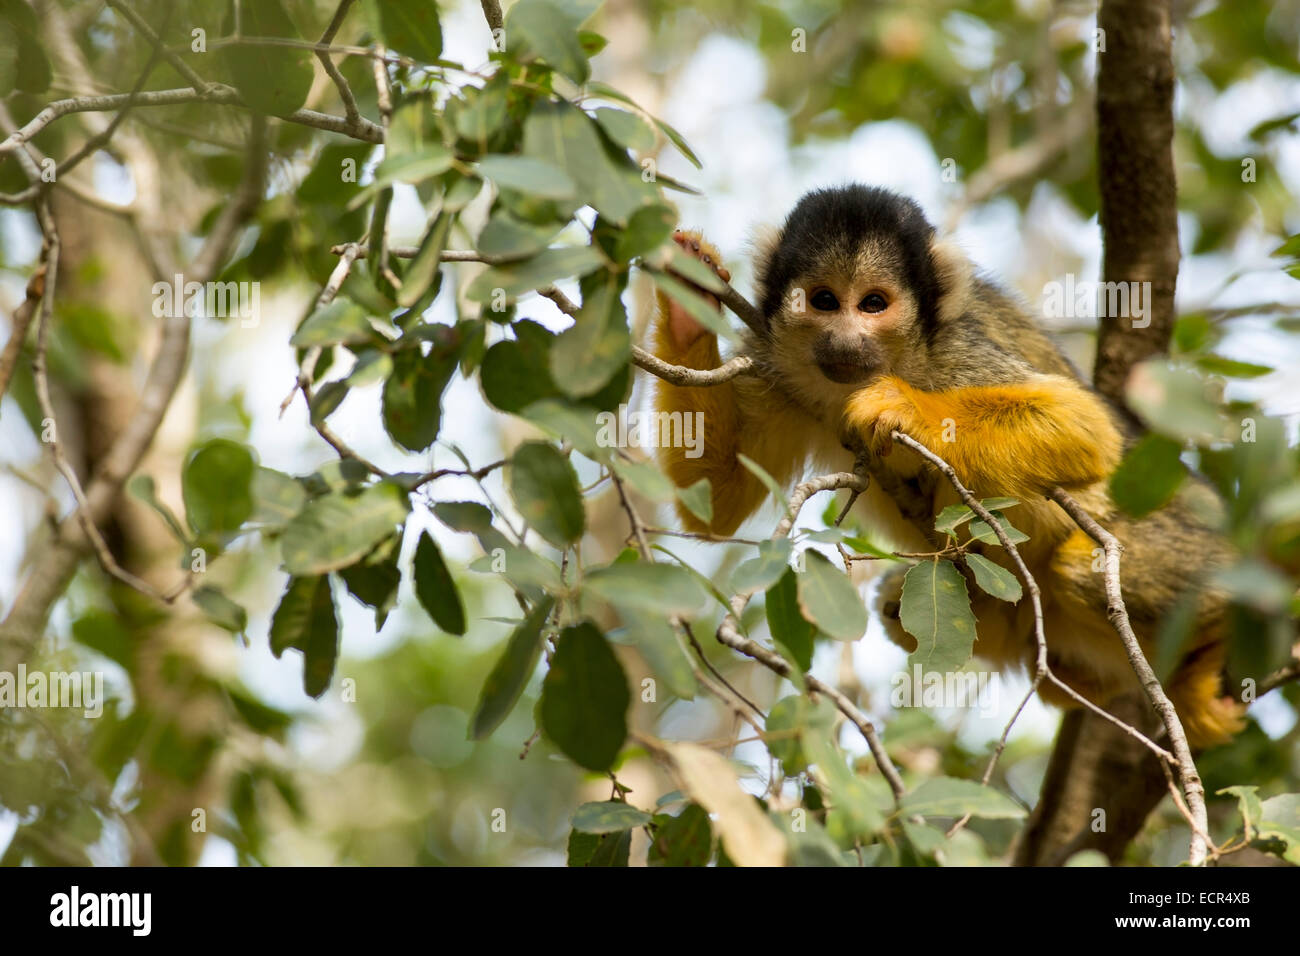 Totenkopfaffen (Saimiri Sciureus) in einem Baum. Dieser Affe ist in tropischen Süd- und Mittelamerika heimisch. Es ist ausschließlich arb Stockfoto